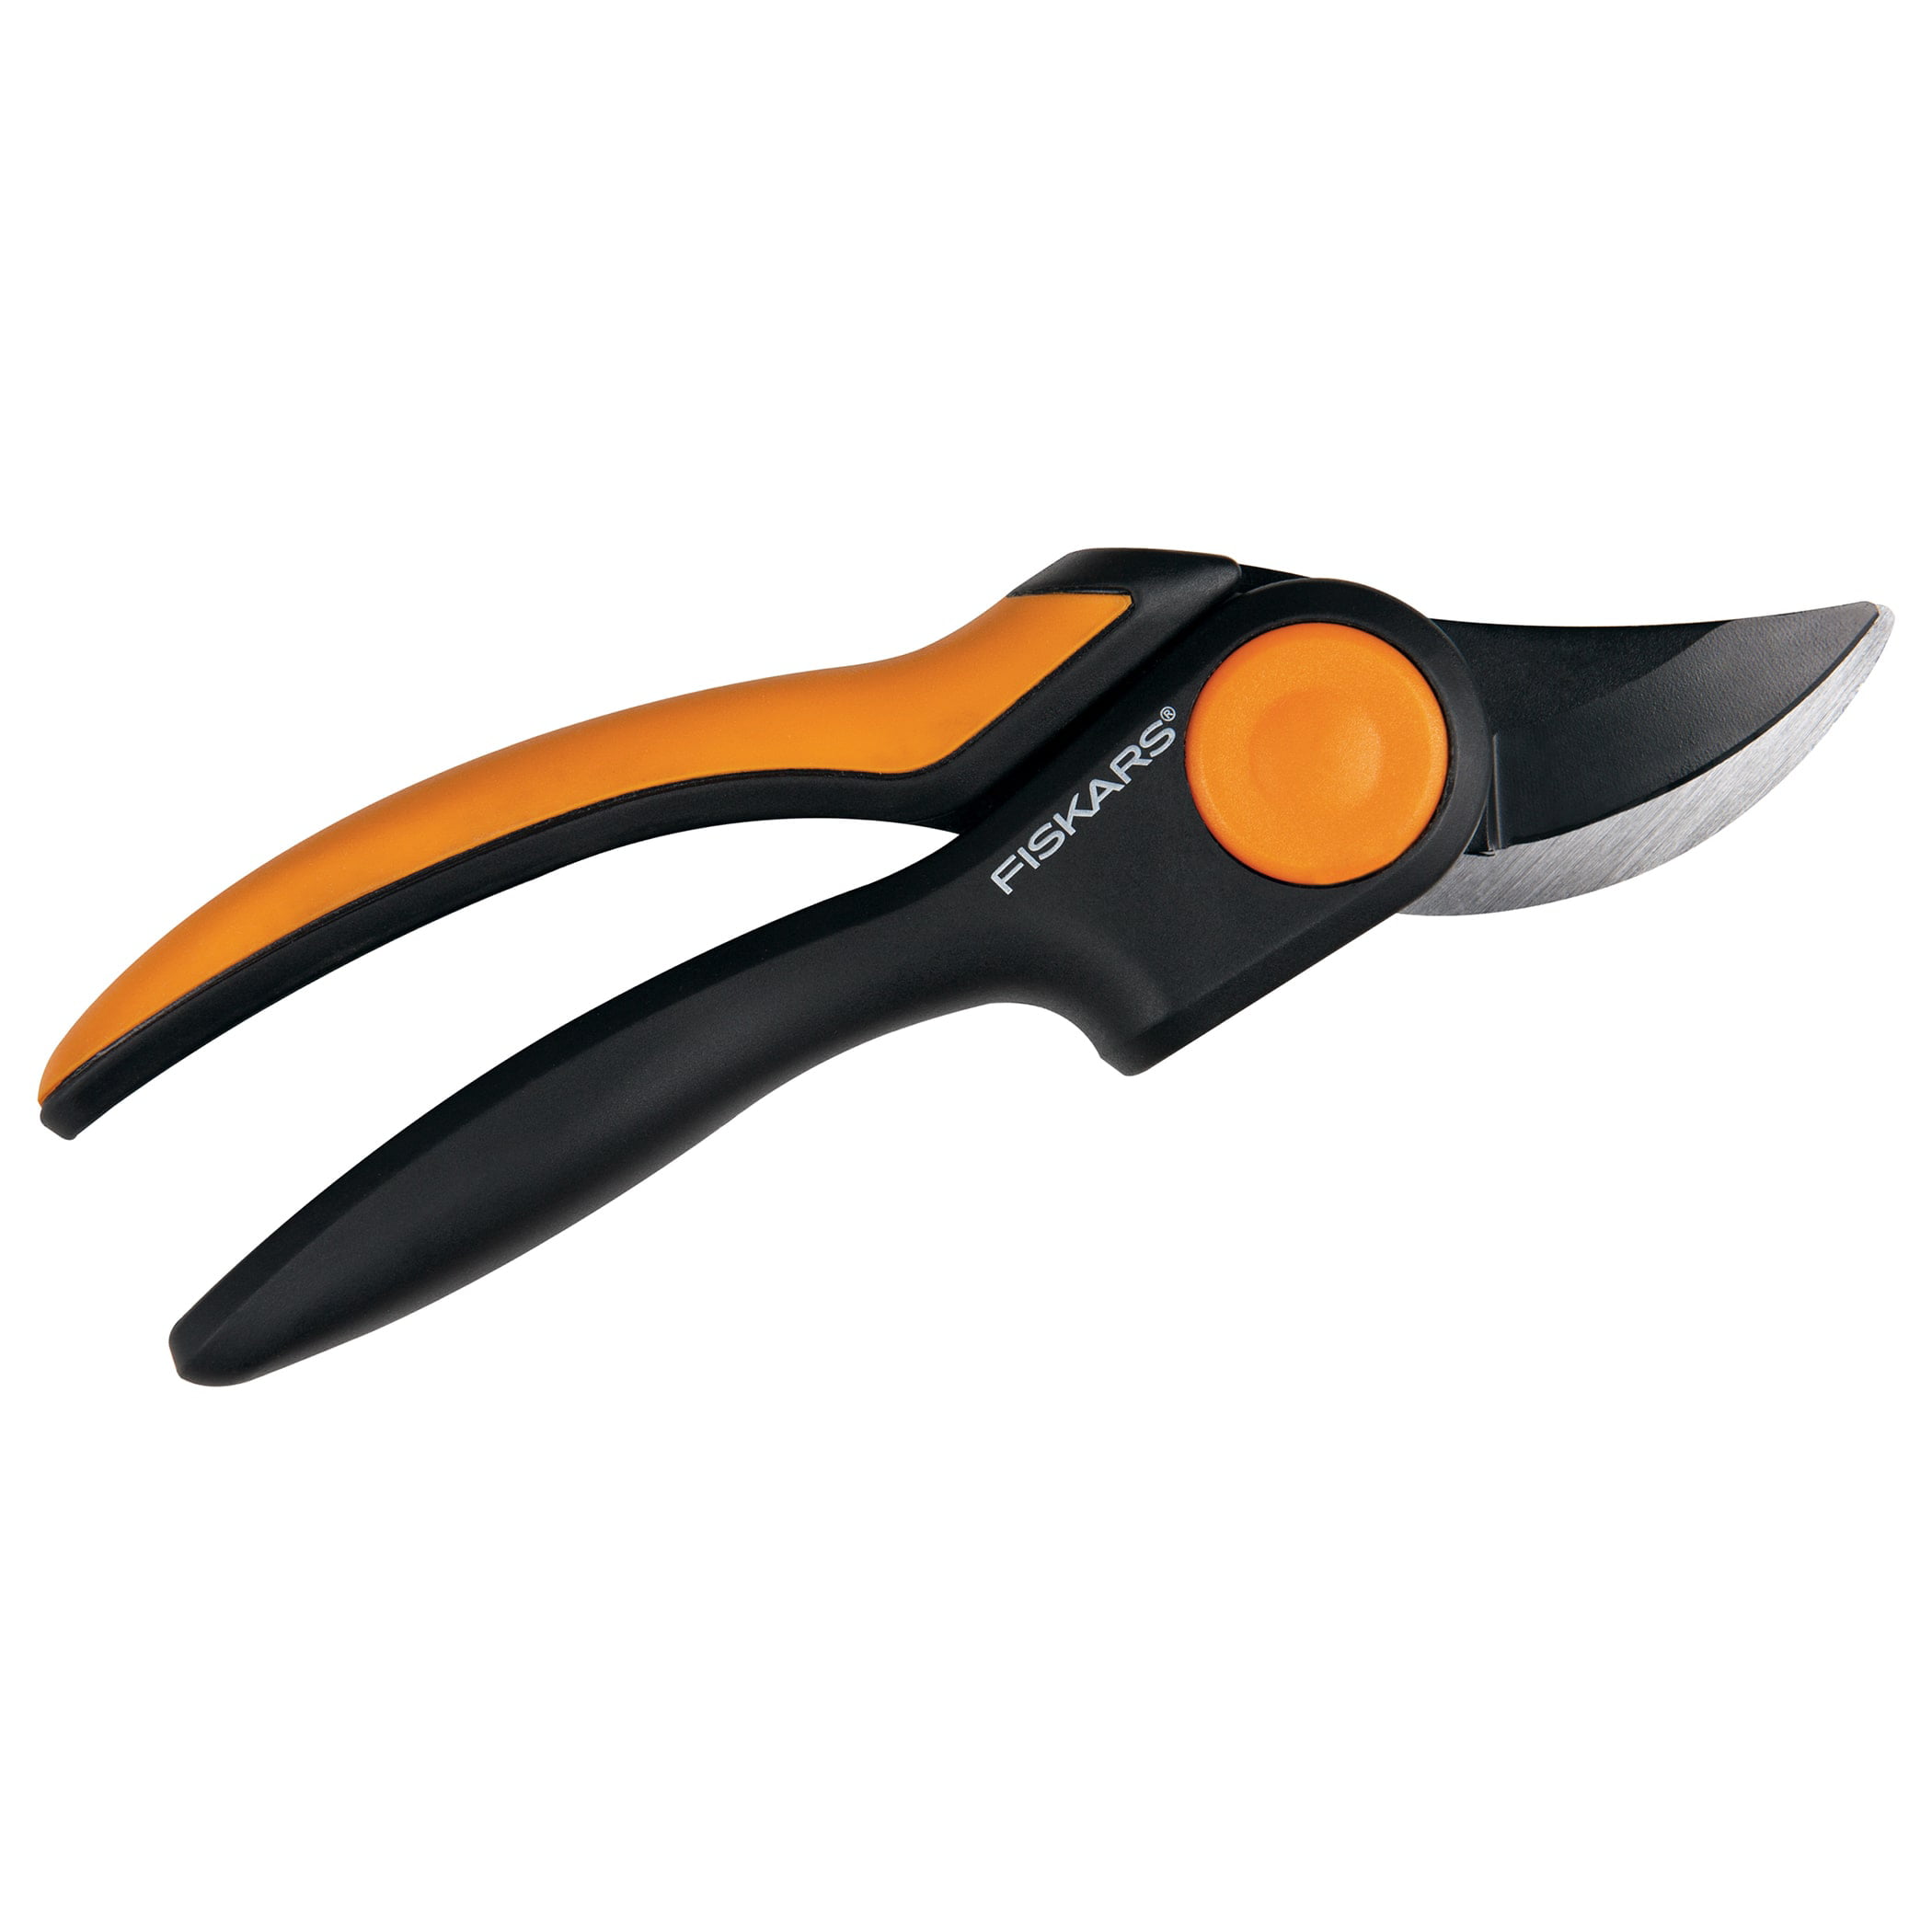 FISKARS Bypass Pruner Hand Scissors P26 Trimming 208 mm Original Hight Quality 